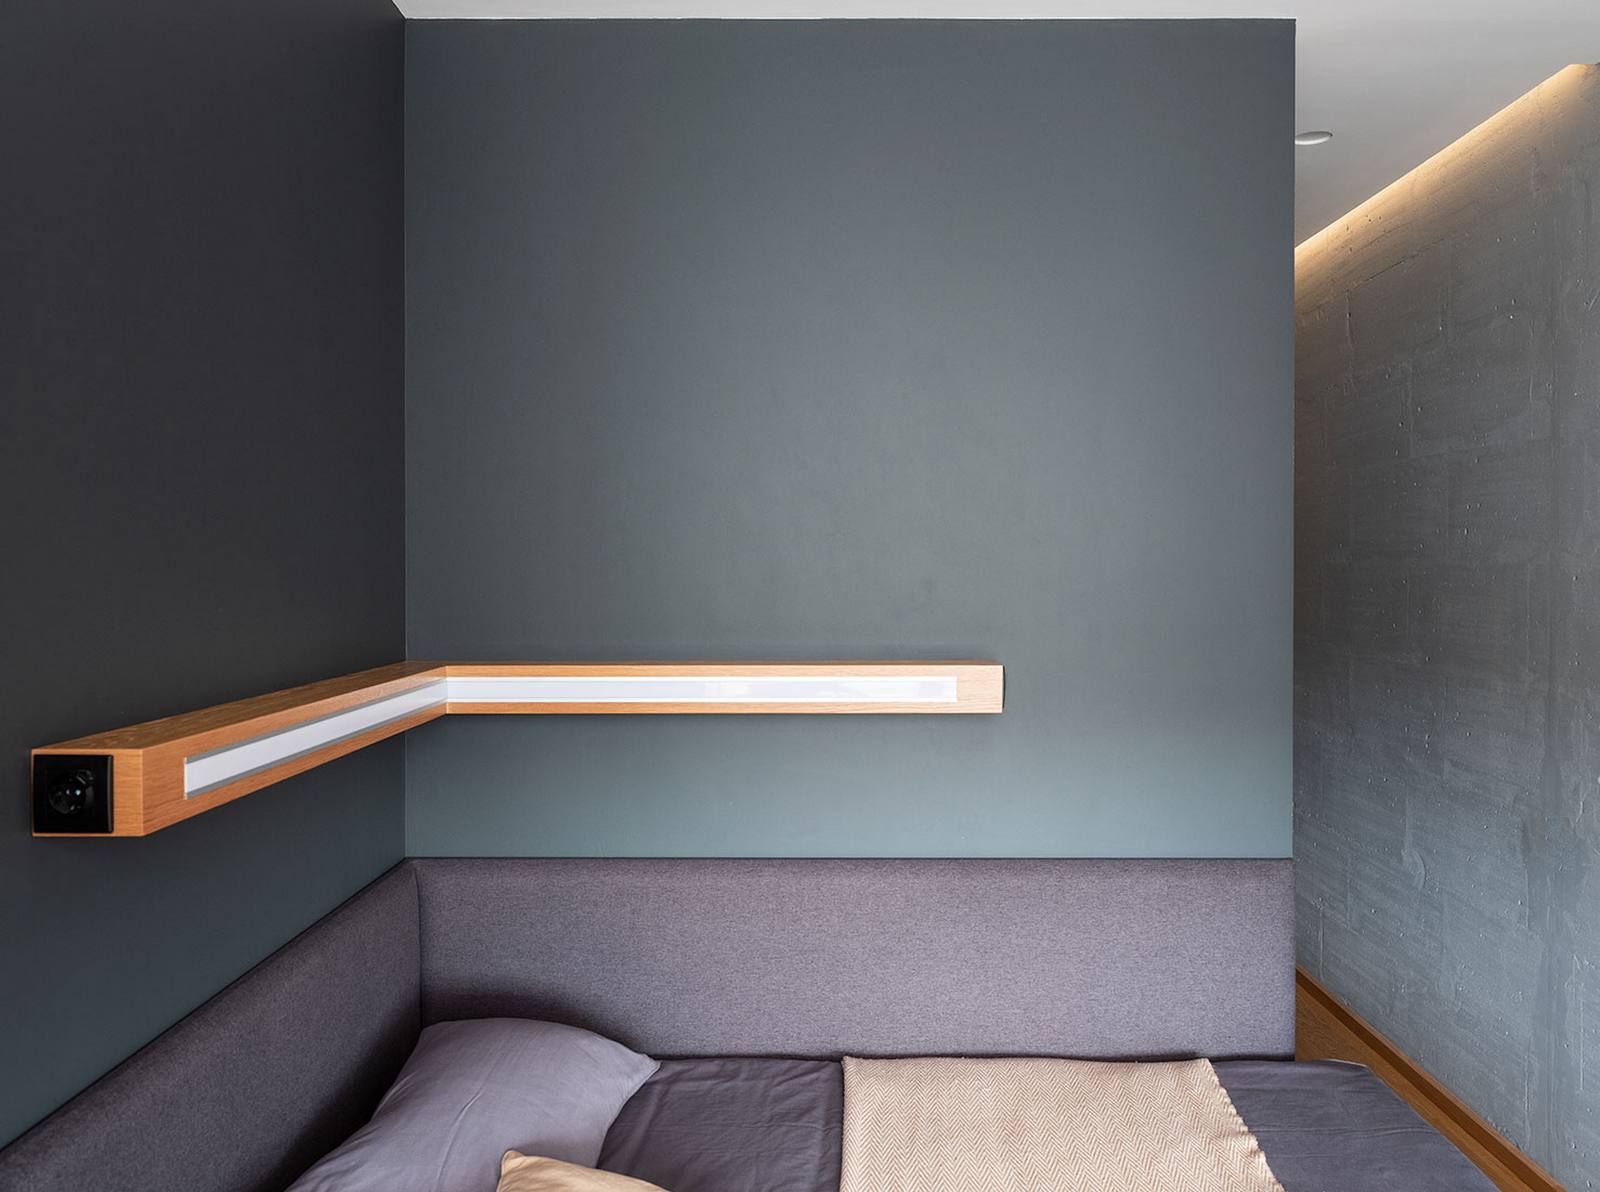 Phòng ngủ có thiết kế siêu đơn giản, có thể nói là tinh giản nội thất đến mức tối đa. Không táp đầu giường, không sử dụng bất cứ phụ kiện trang trí nào, chỉ có duy nhất một thiết bị chiếu sáng tích hợp kệ góc trên nền tường xám.